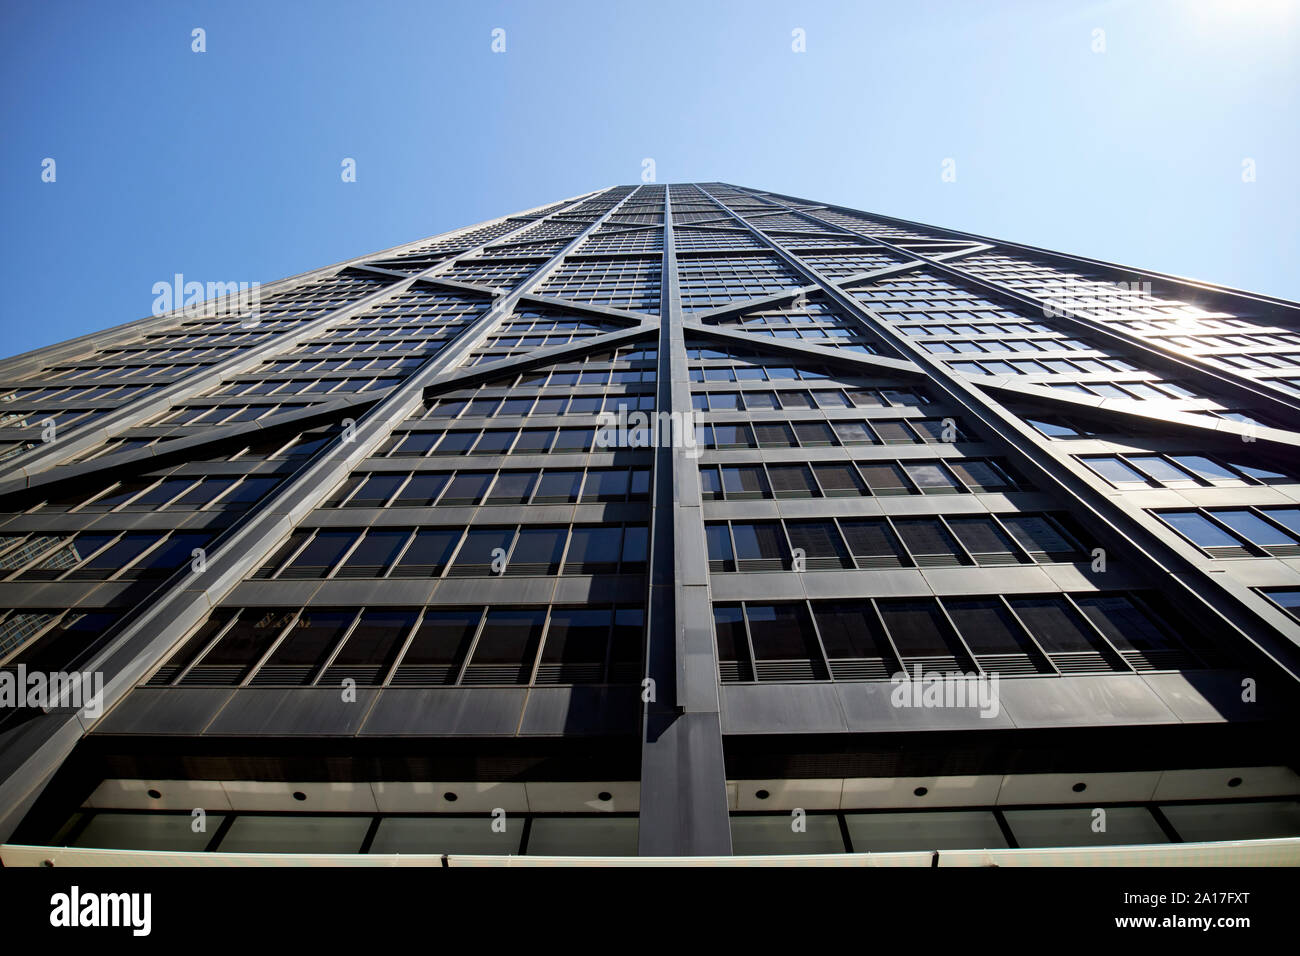 875 north michigan avenue the john hancock center skyscraper chicago illinois united states of america Stock Photo